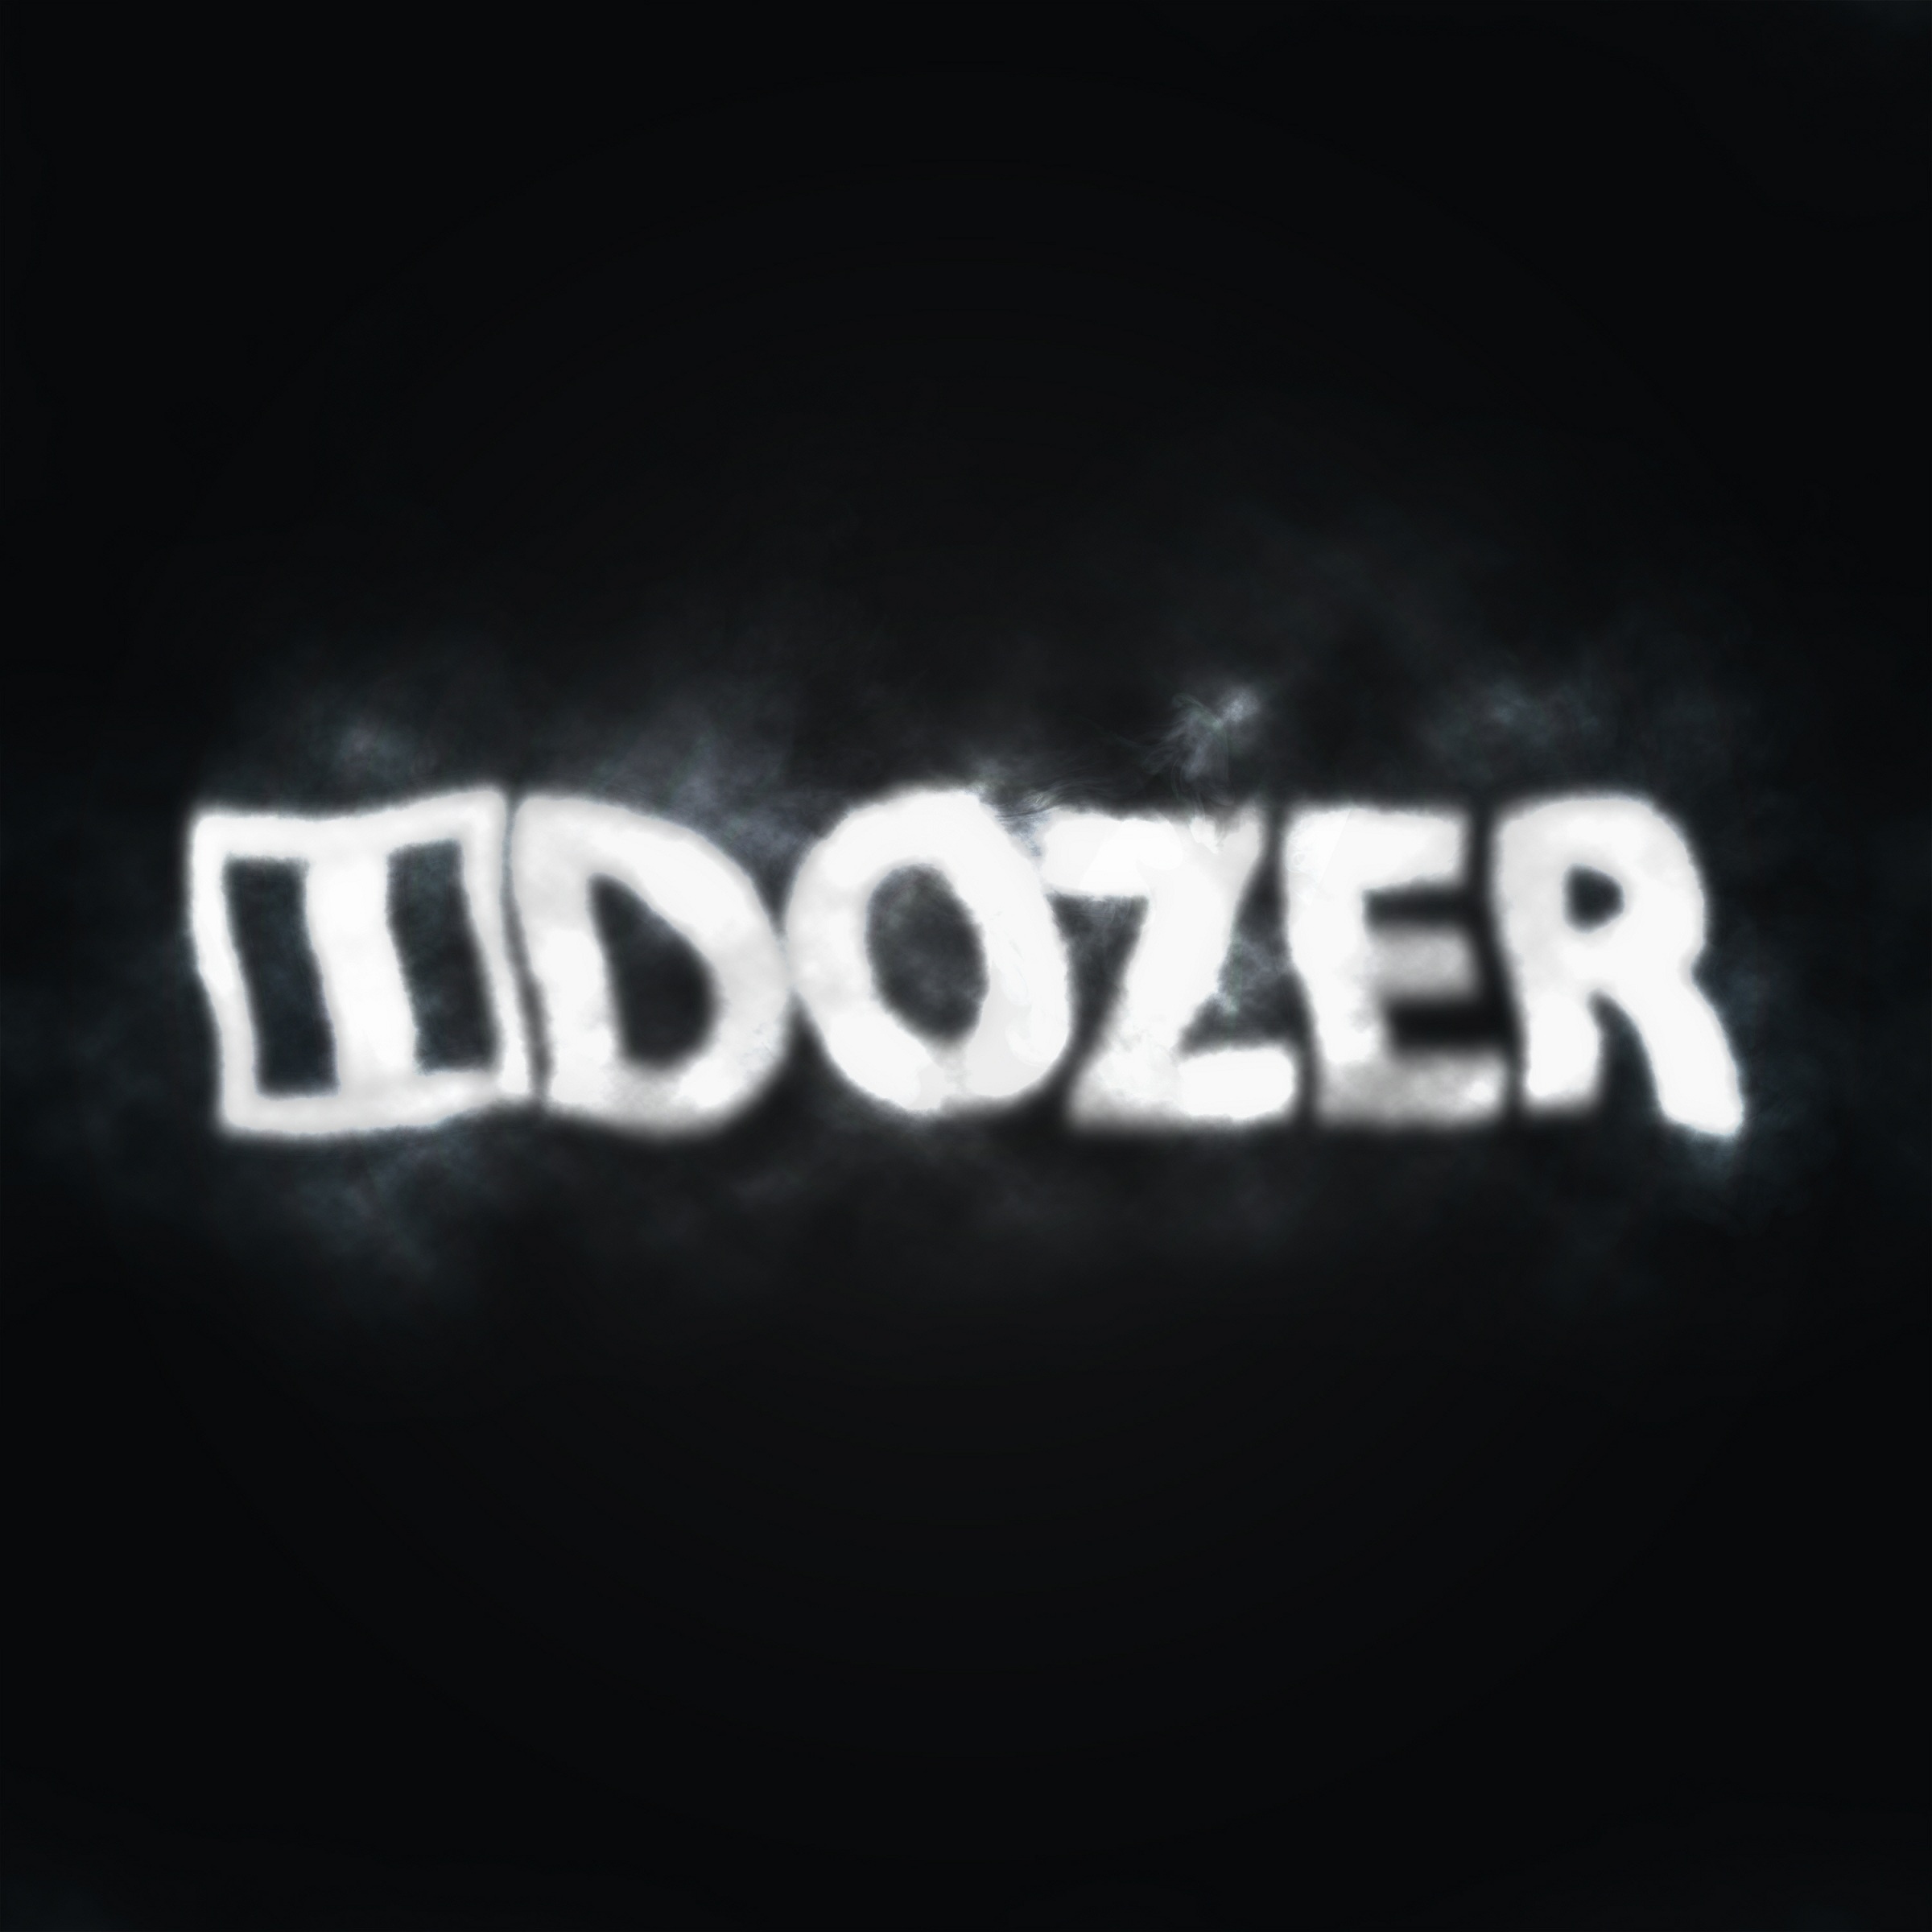 iDozer